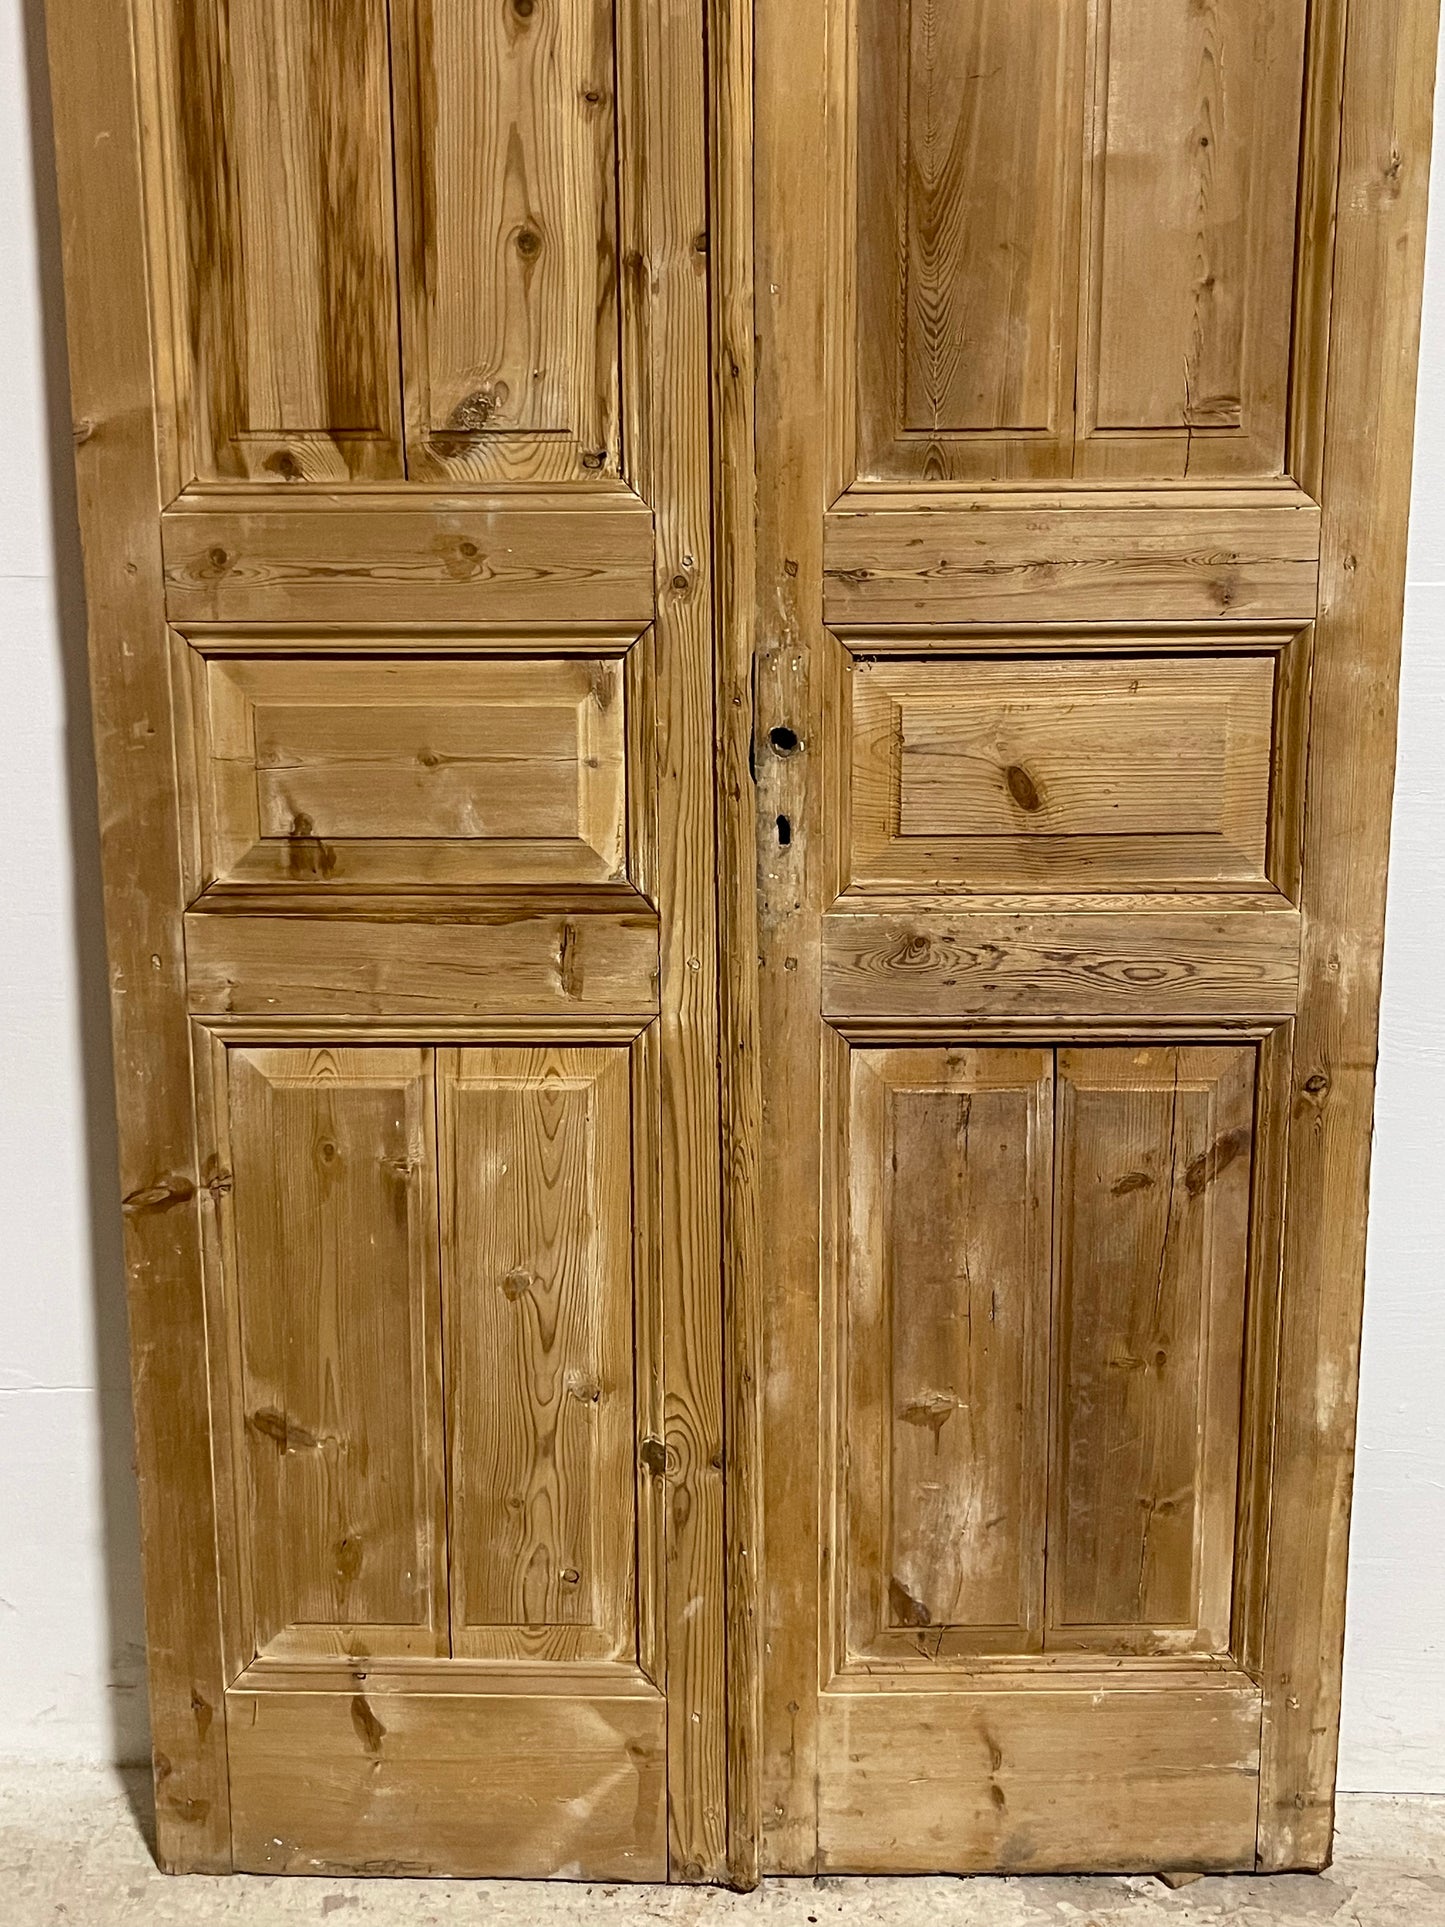 Antique French panel Doors (97.75x44.75) J620